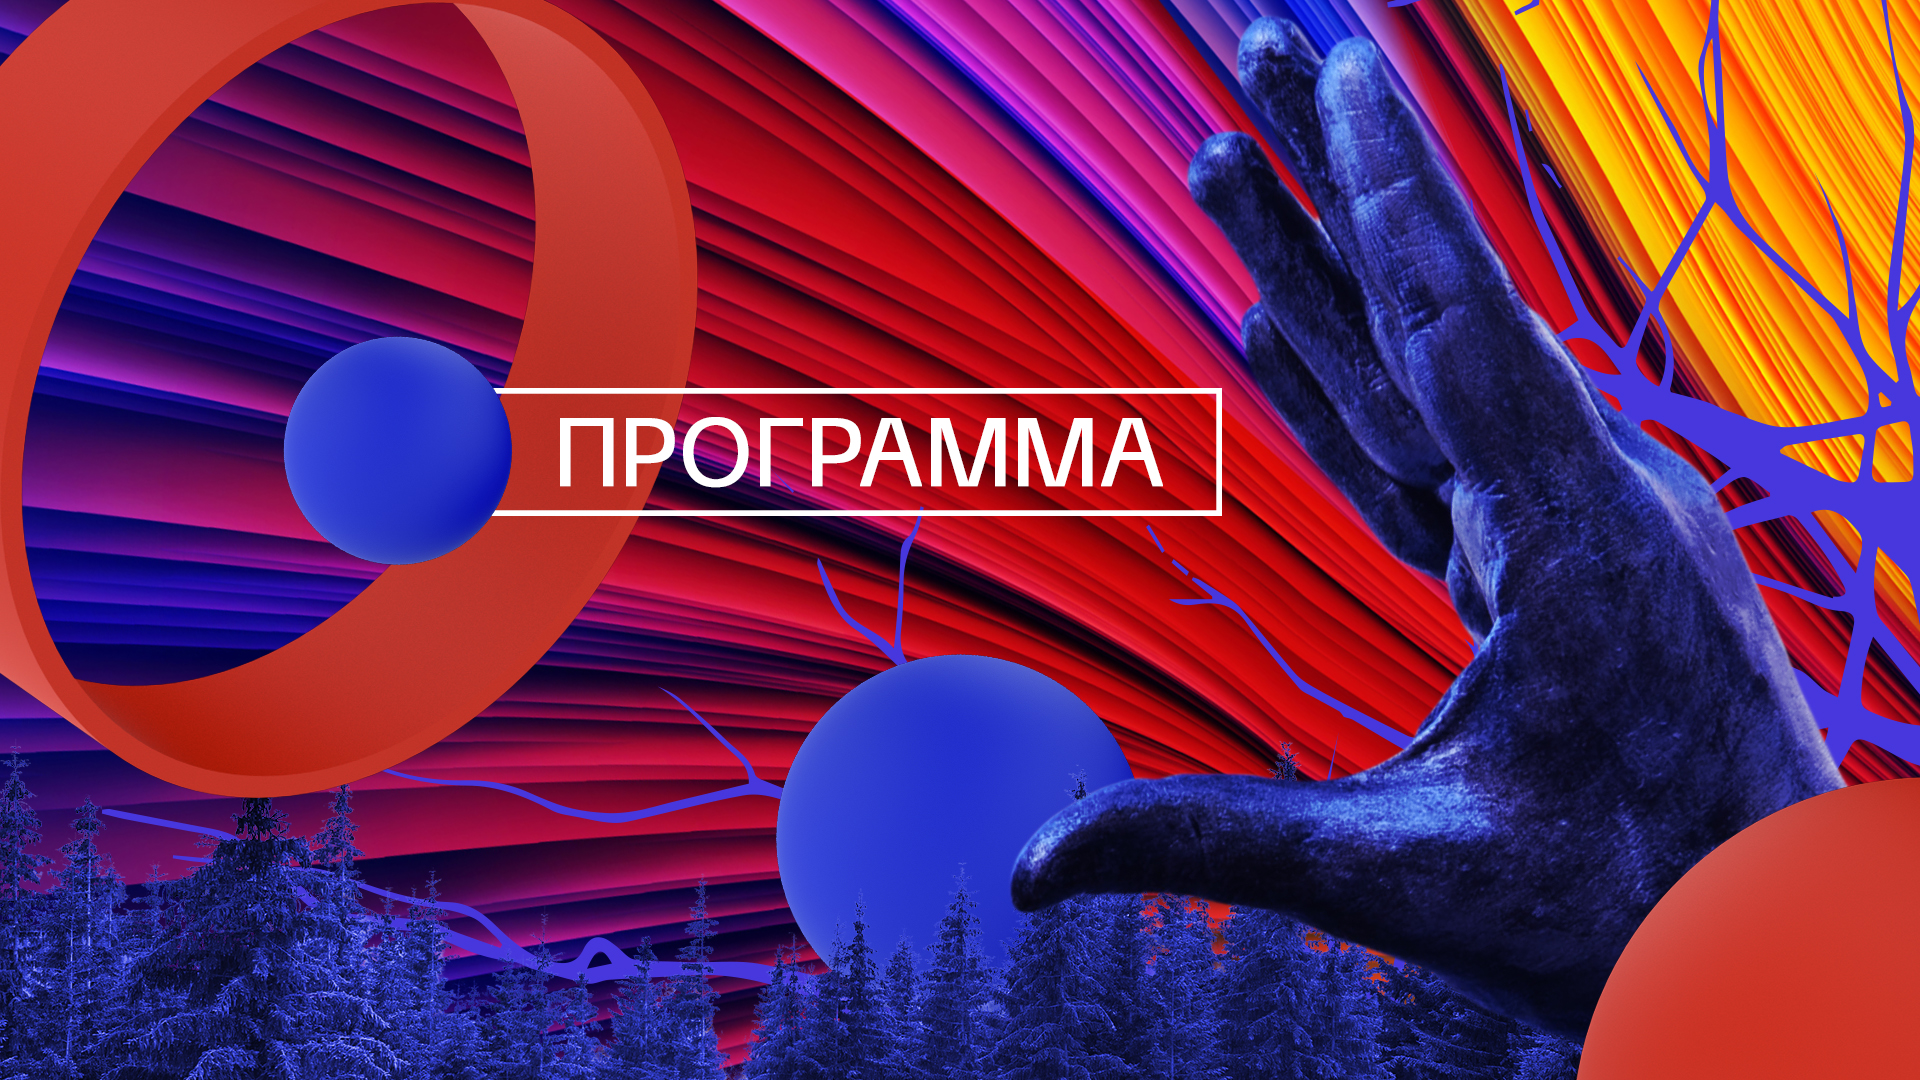 Всероссийский литературный фестиваль фантастики памяти Михаила Успенского 25-27 ноября| Гид по программе